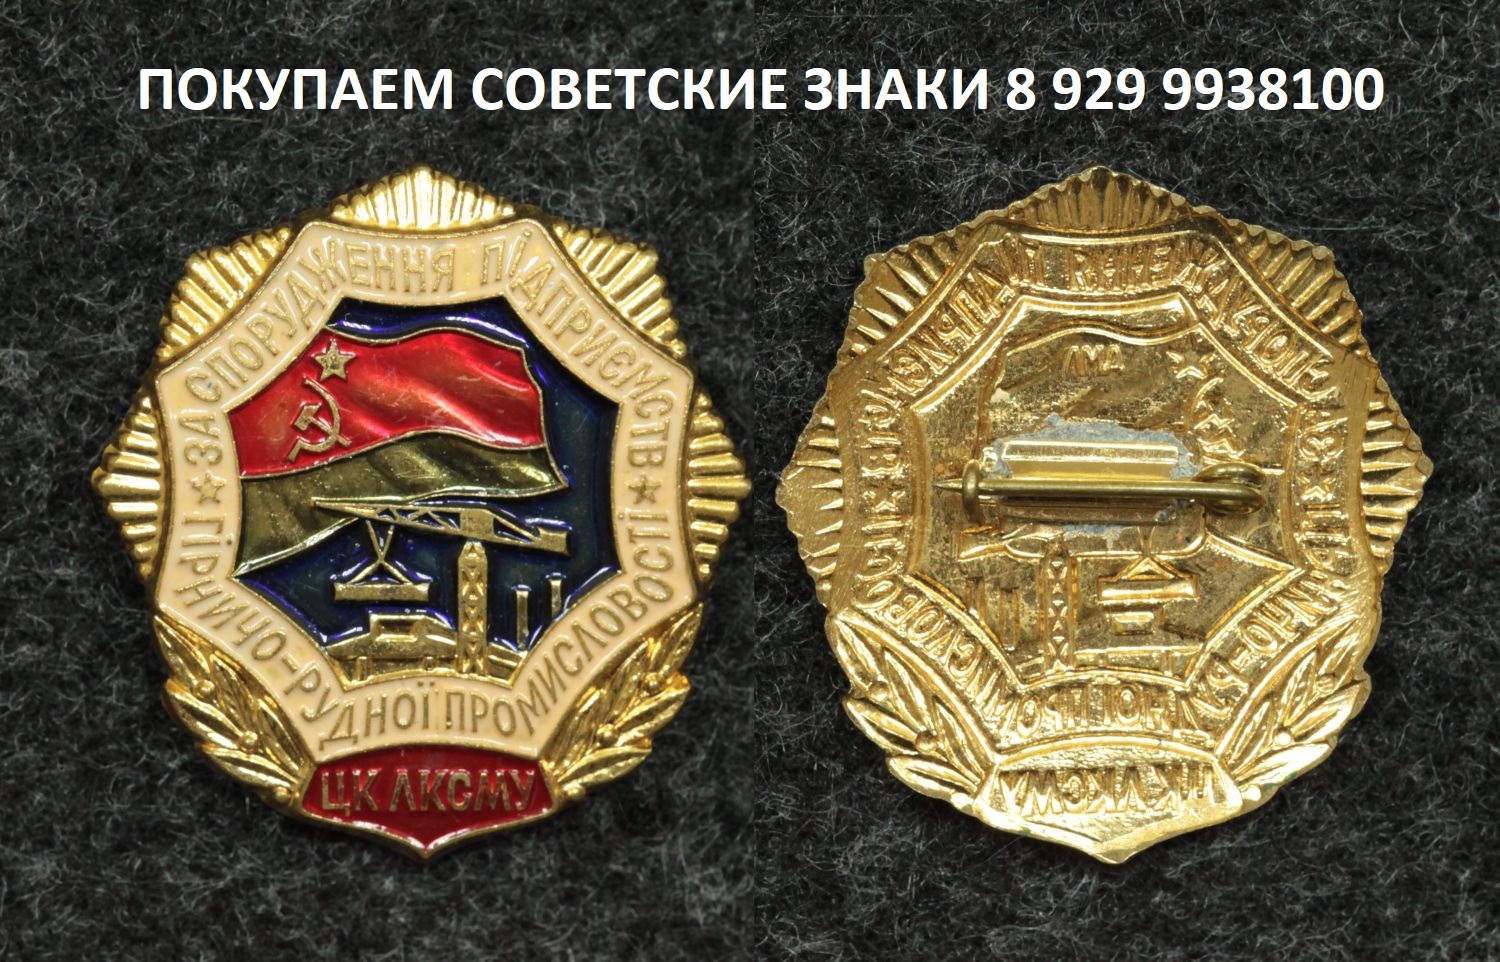 Знак ЦК ЛКСМУ За сооружение предприятий Горно-рудной промышленности